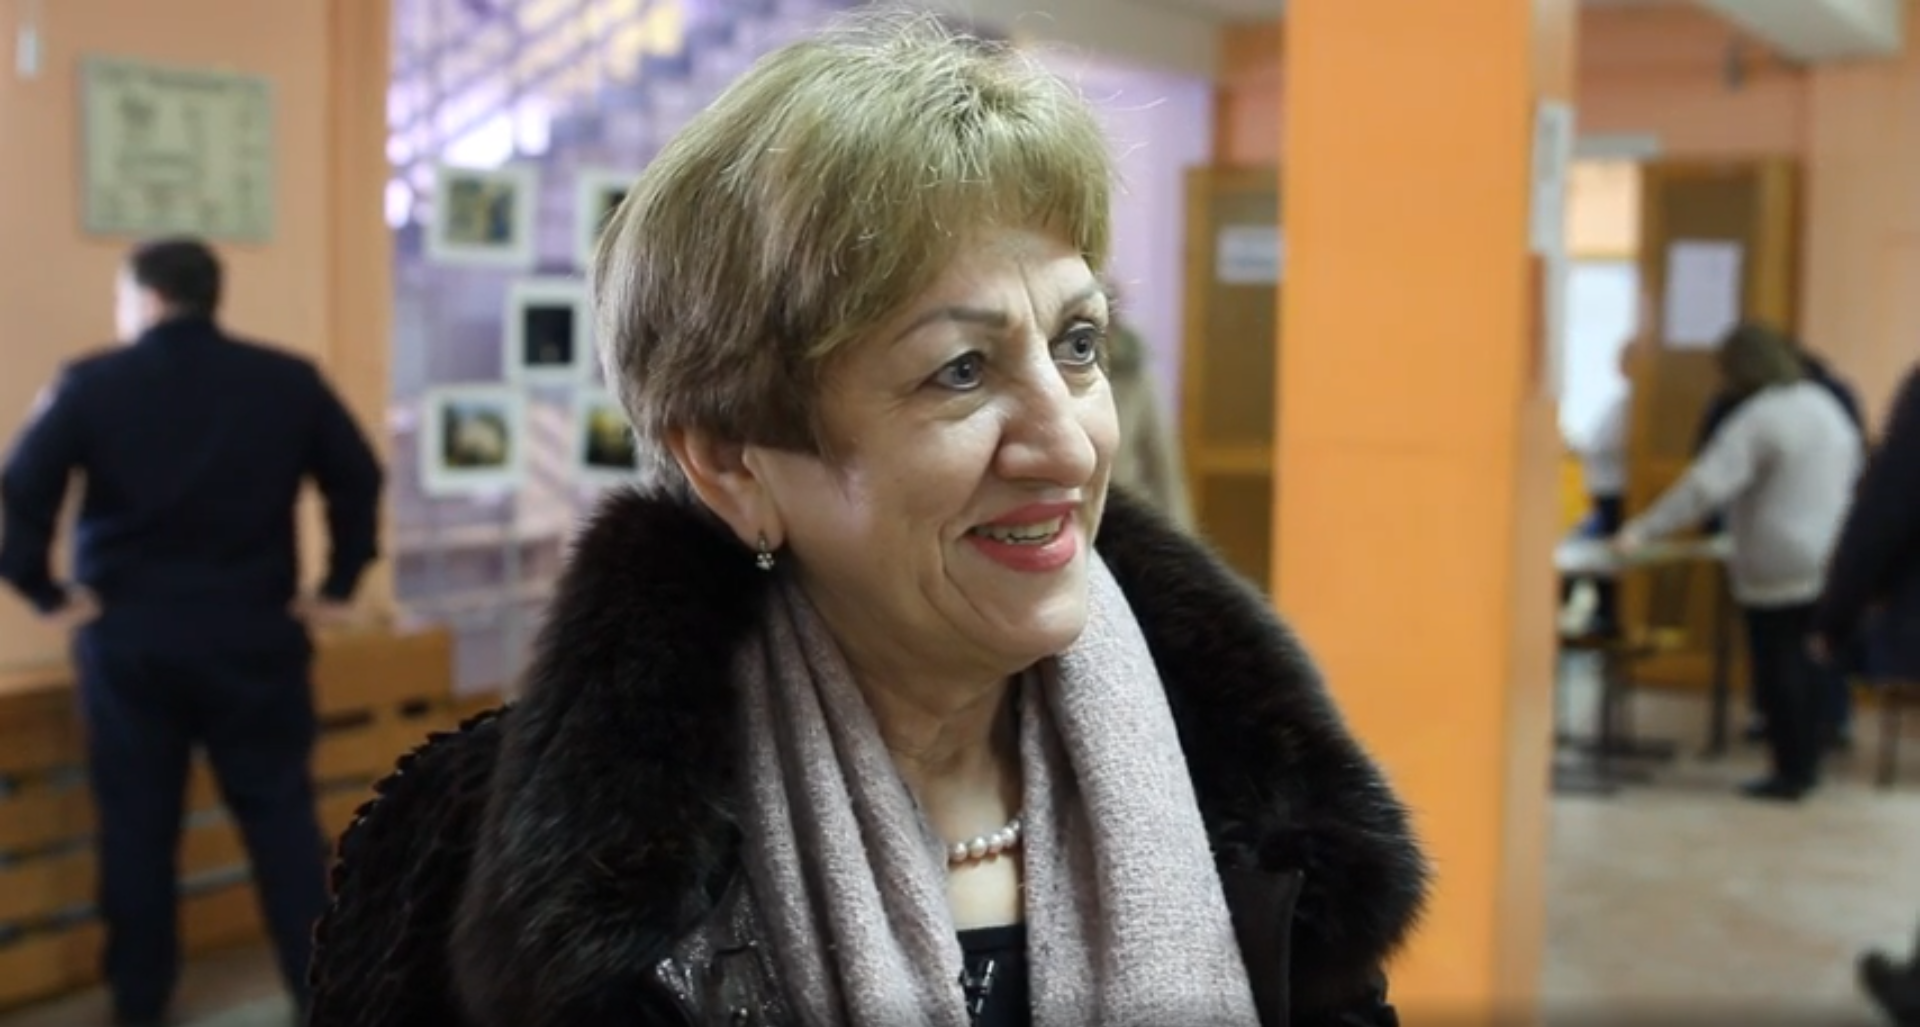 Уполномоченный по правам человека в Кузбассе Зоя Волошина пришла на выборы